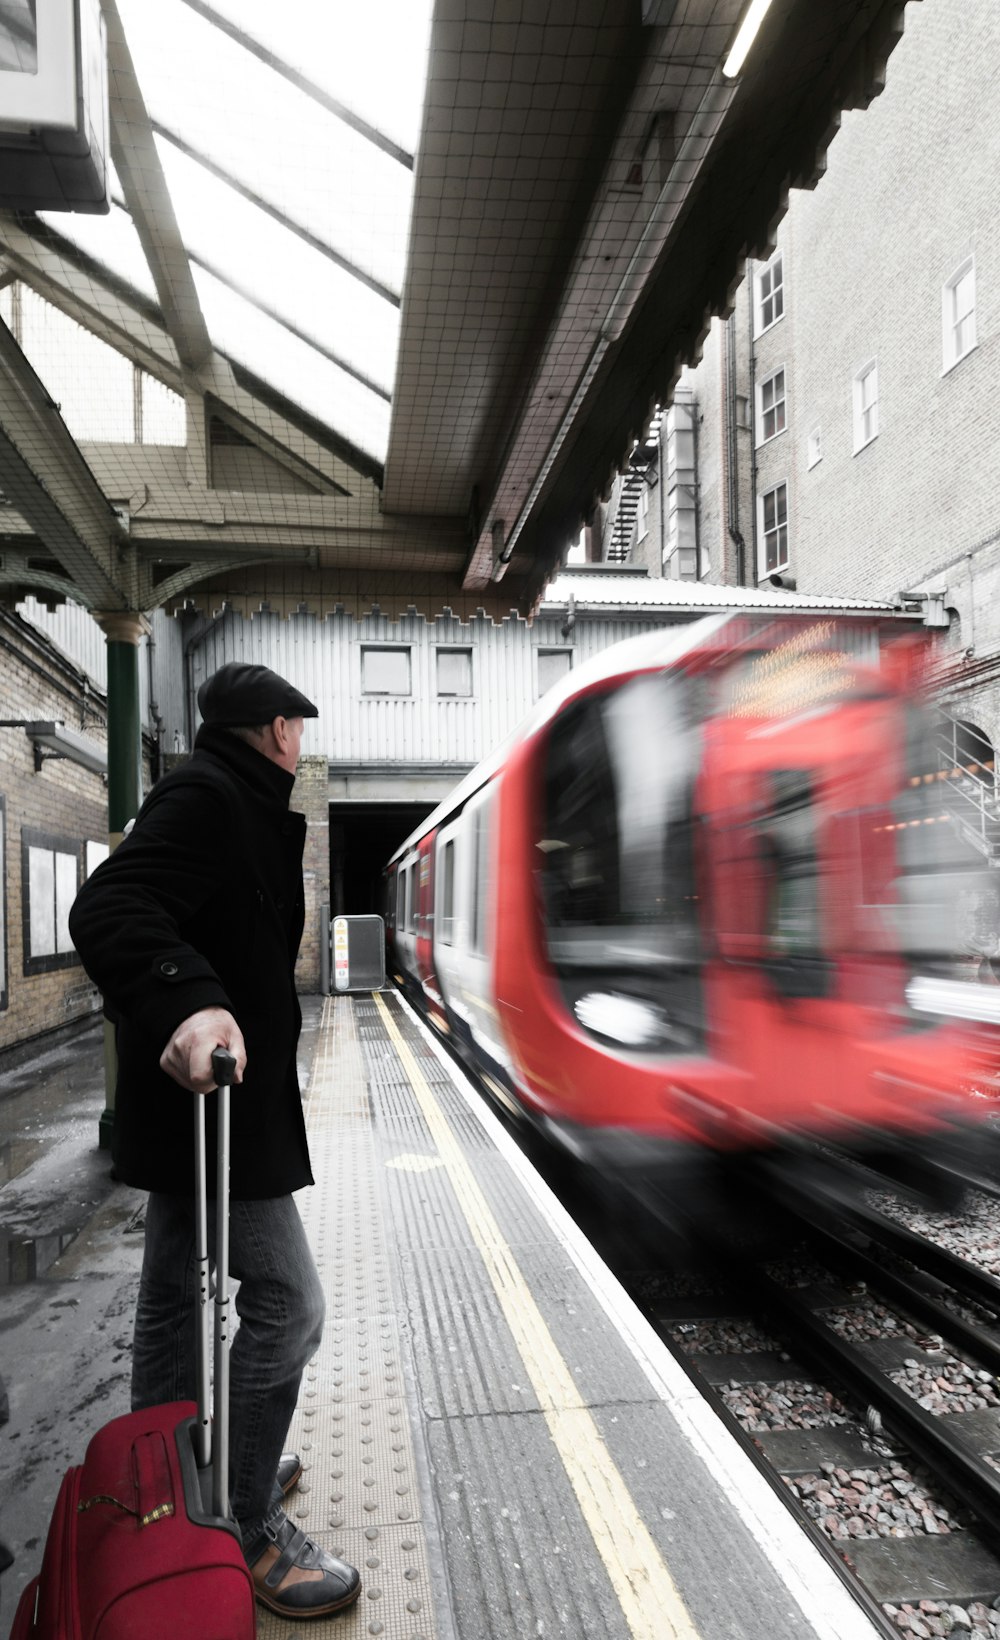 Mann mit Gepäck wartet auf der Bahn mit rotem Zug vorbeifahren